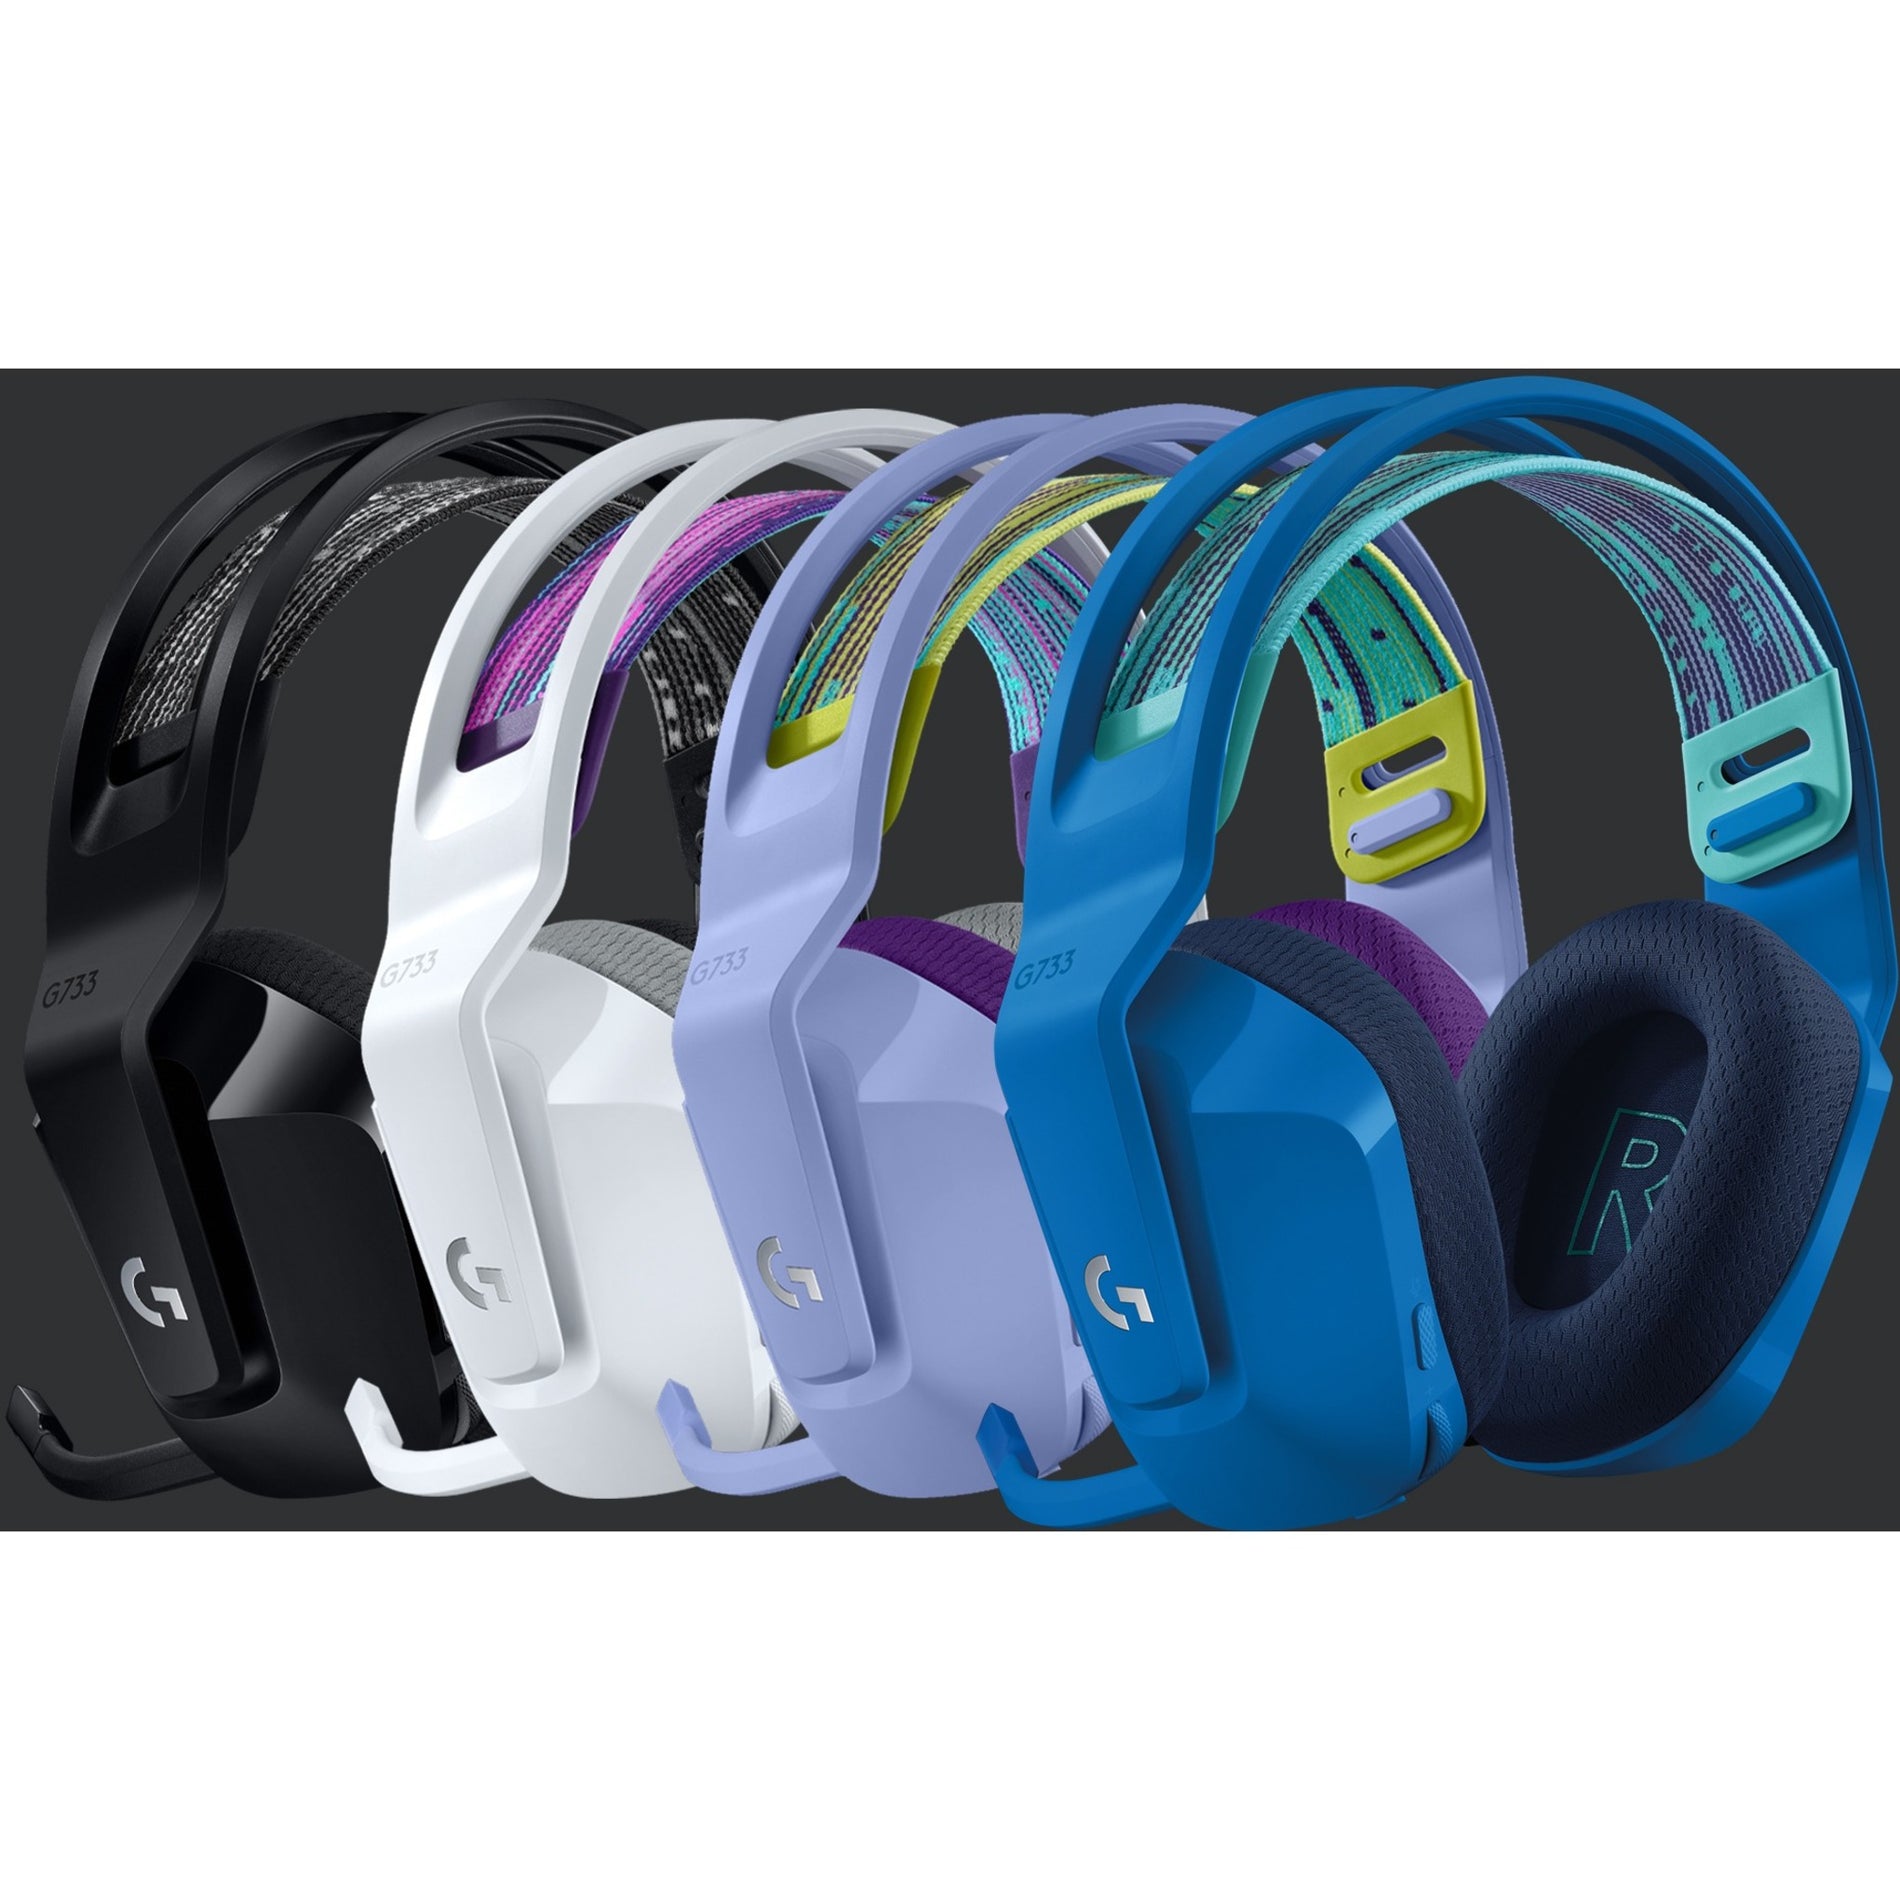 赛睿 981-000889 G733 无线 RGB 游戏耳机，舒适，轻巧，浅紫色 罗技品牌 罗技